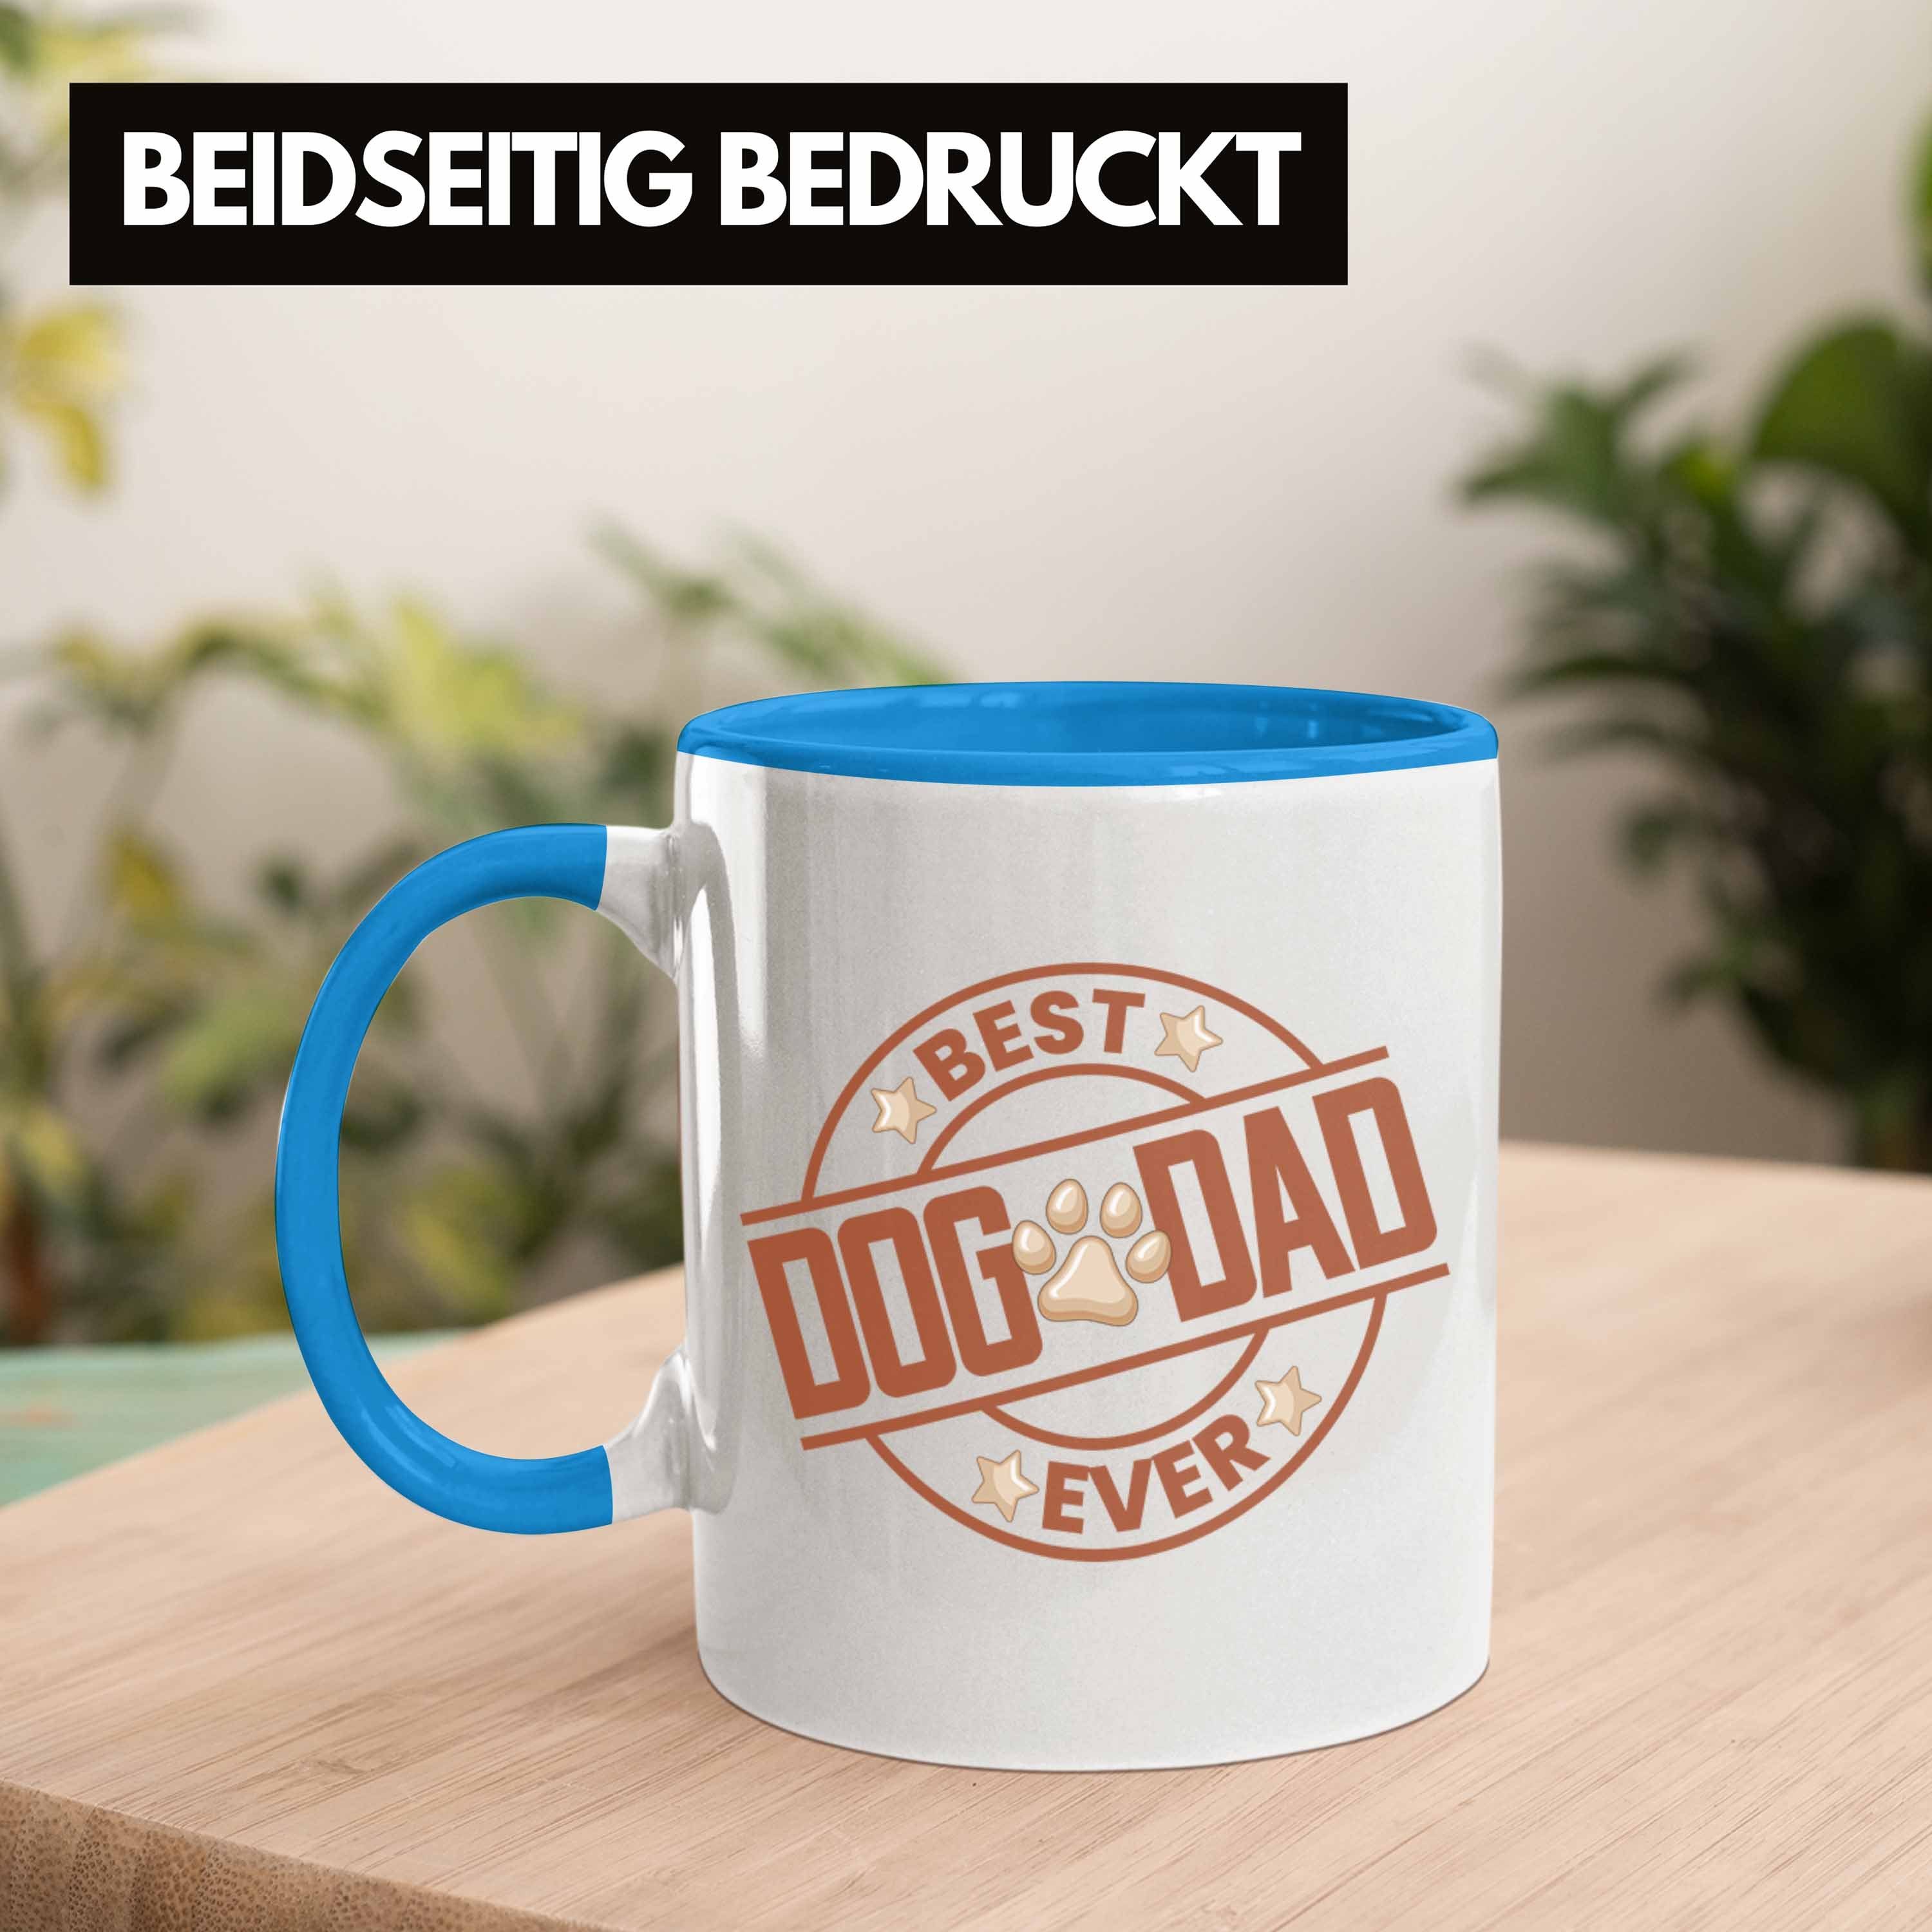 Trendation Tasse Trendation - Hundepapa Blau Bester Dad Tasse Hunde Geschenk Dog Ever Papa Geschenkidee